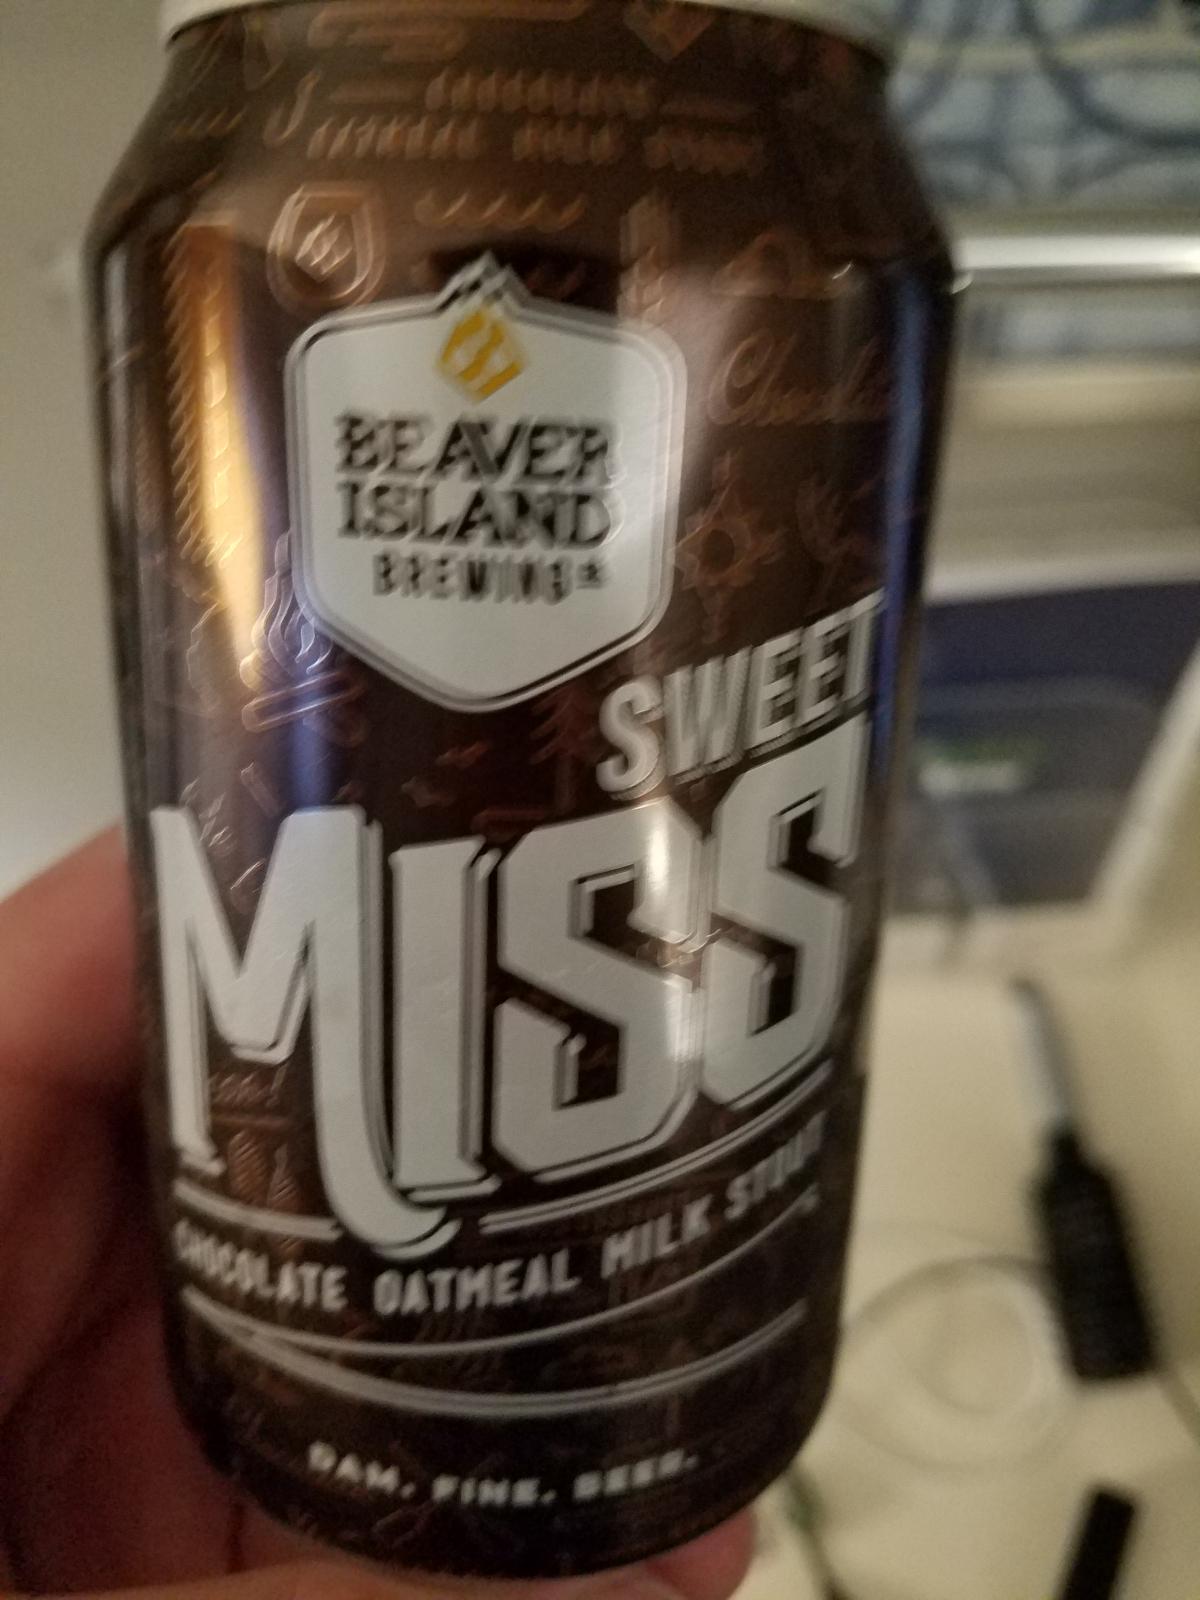 Sweet Mississippi 